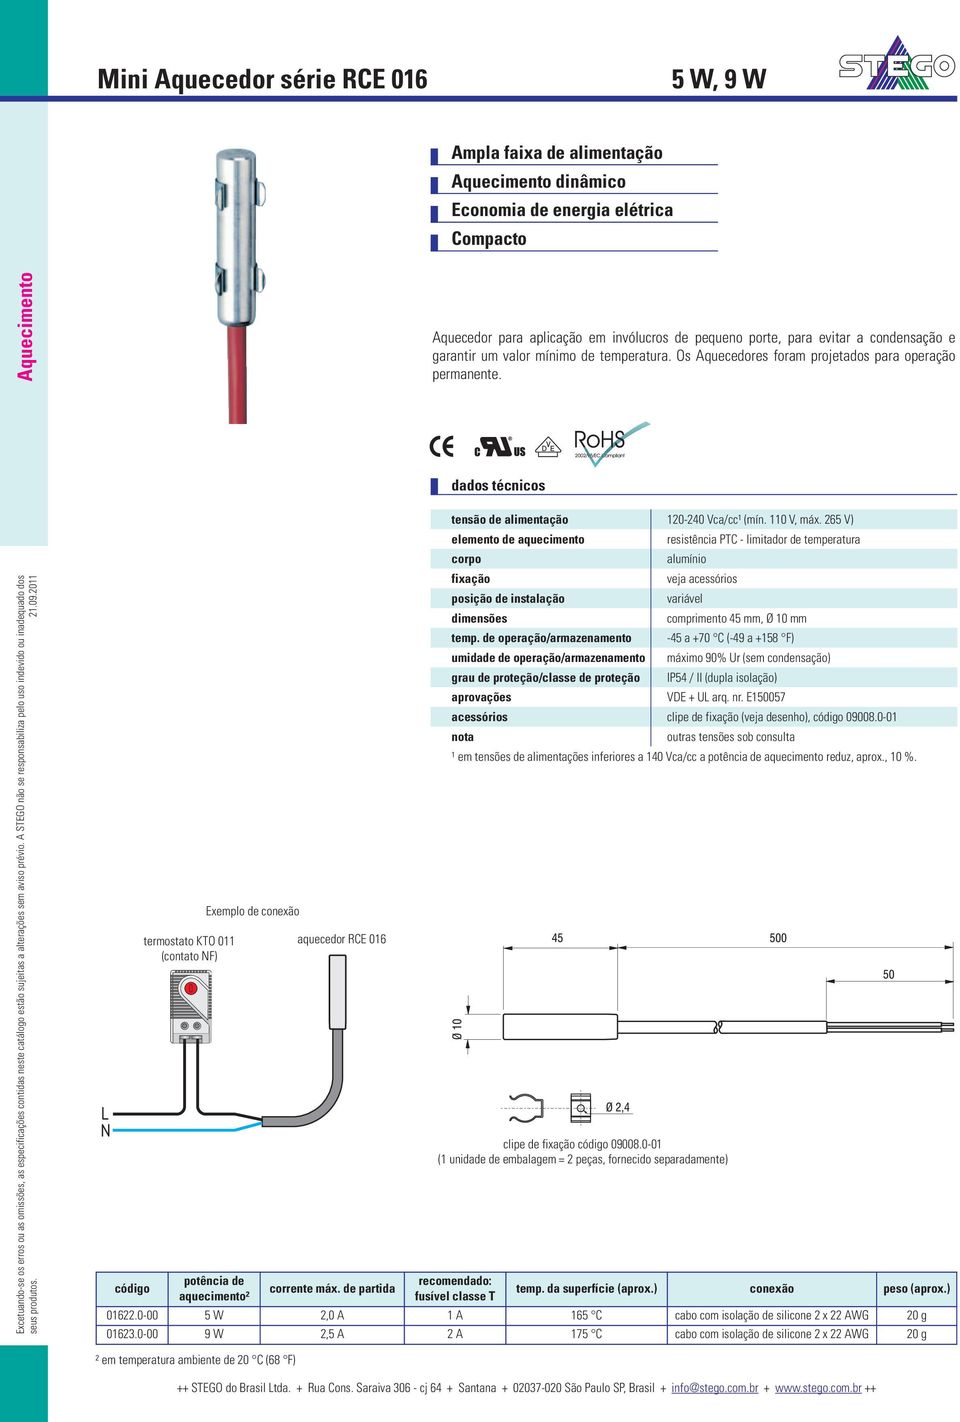 L N código termostato KTO 011 (contato NF) Exemplo de potência de aquecimento² aquecedor RCE 016 corrente máx. de partida tensão de alimentação 120-240 Vca/cc¹ (mín. 110 V, máx.